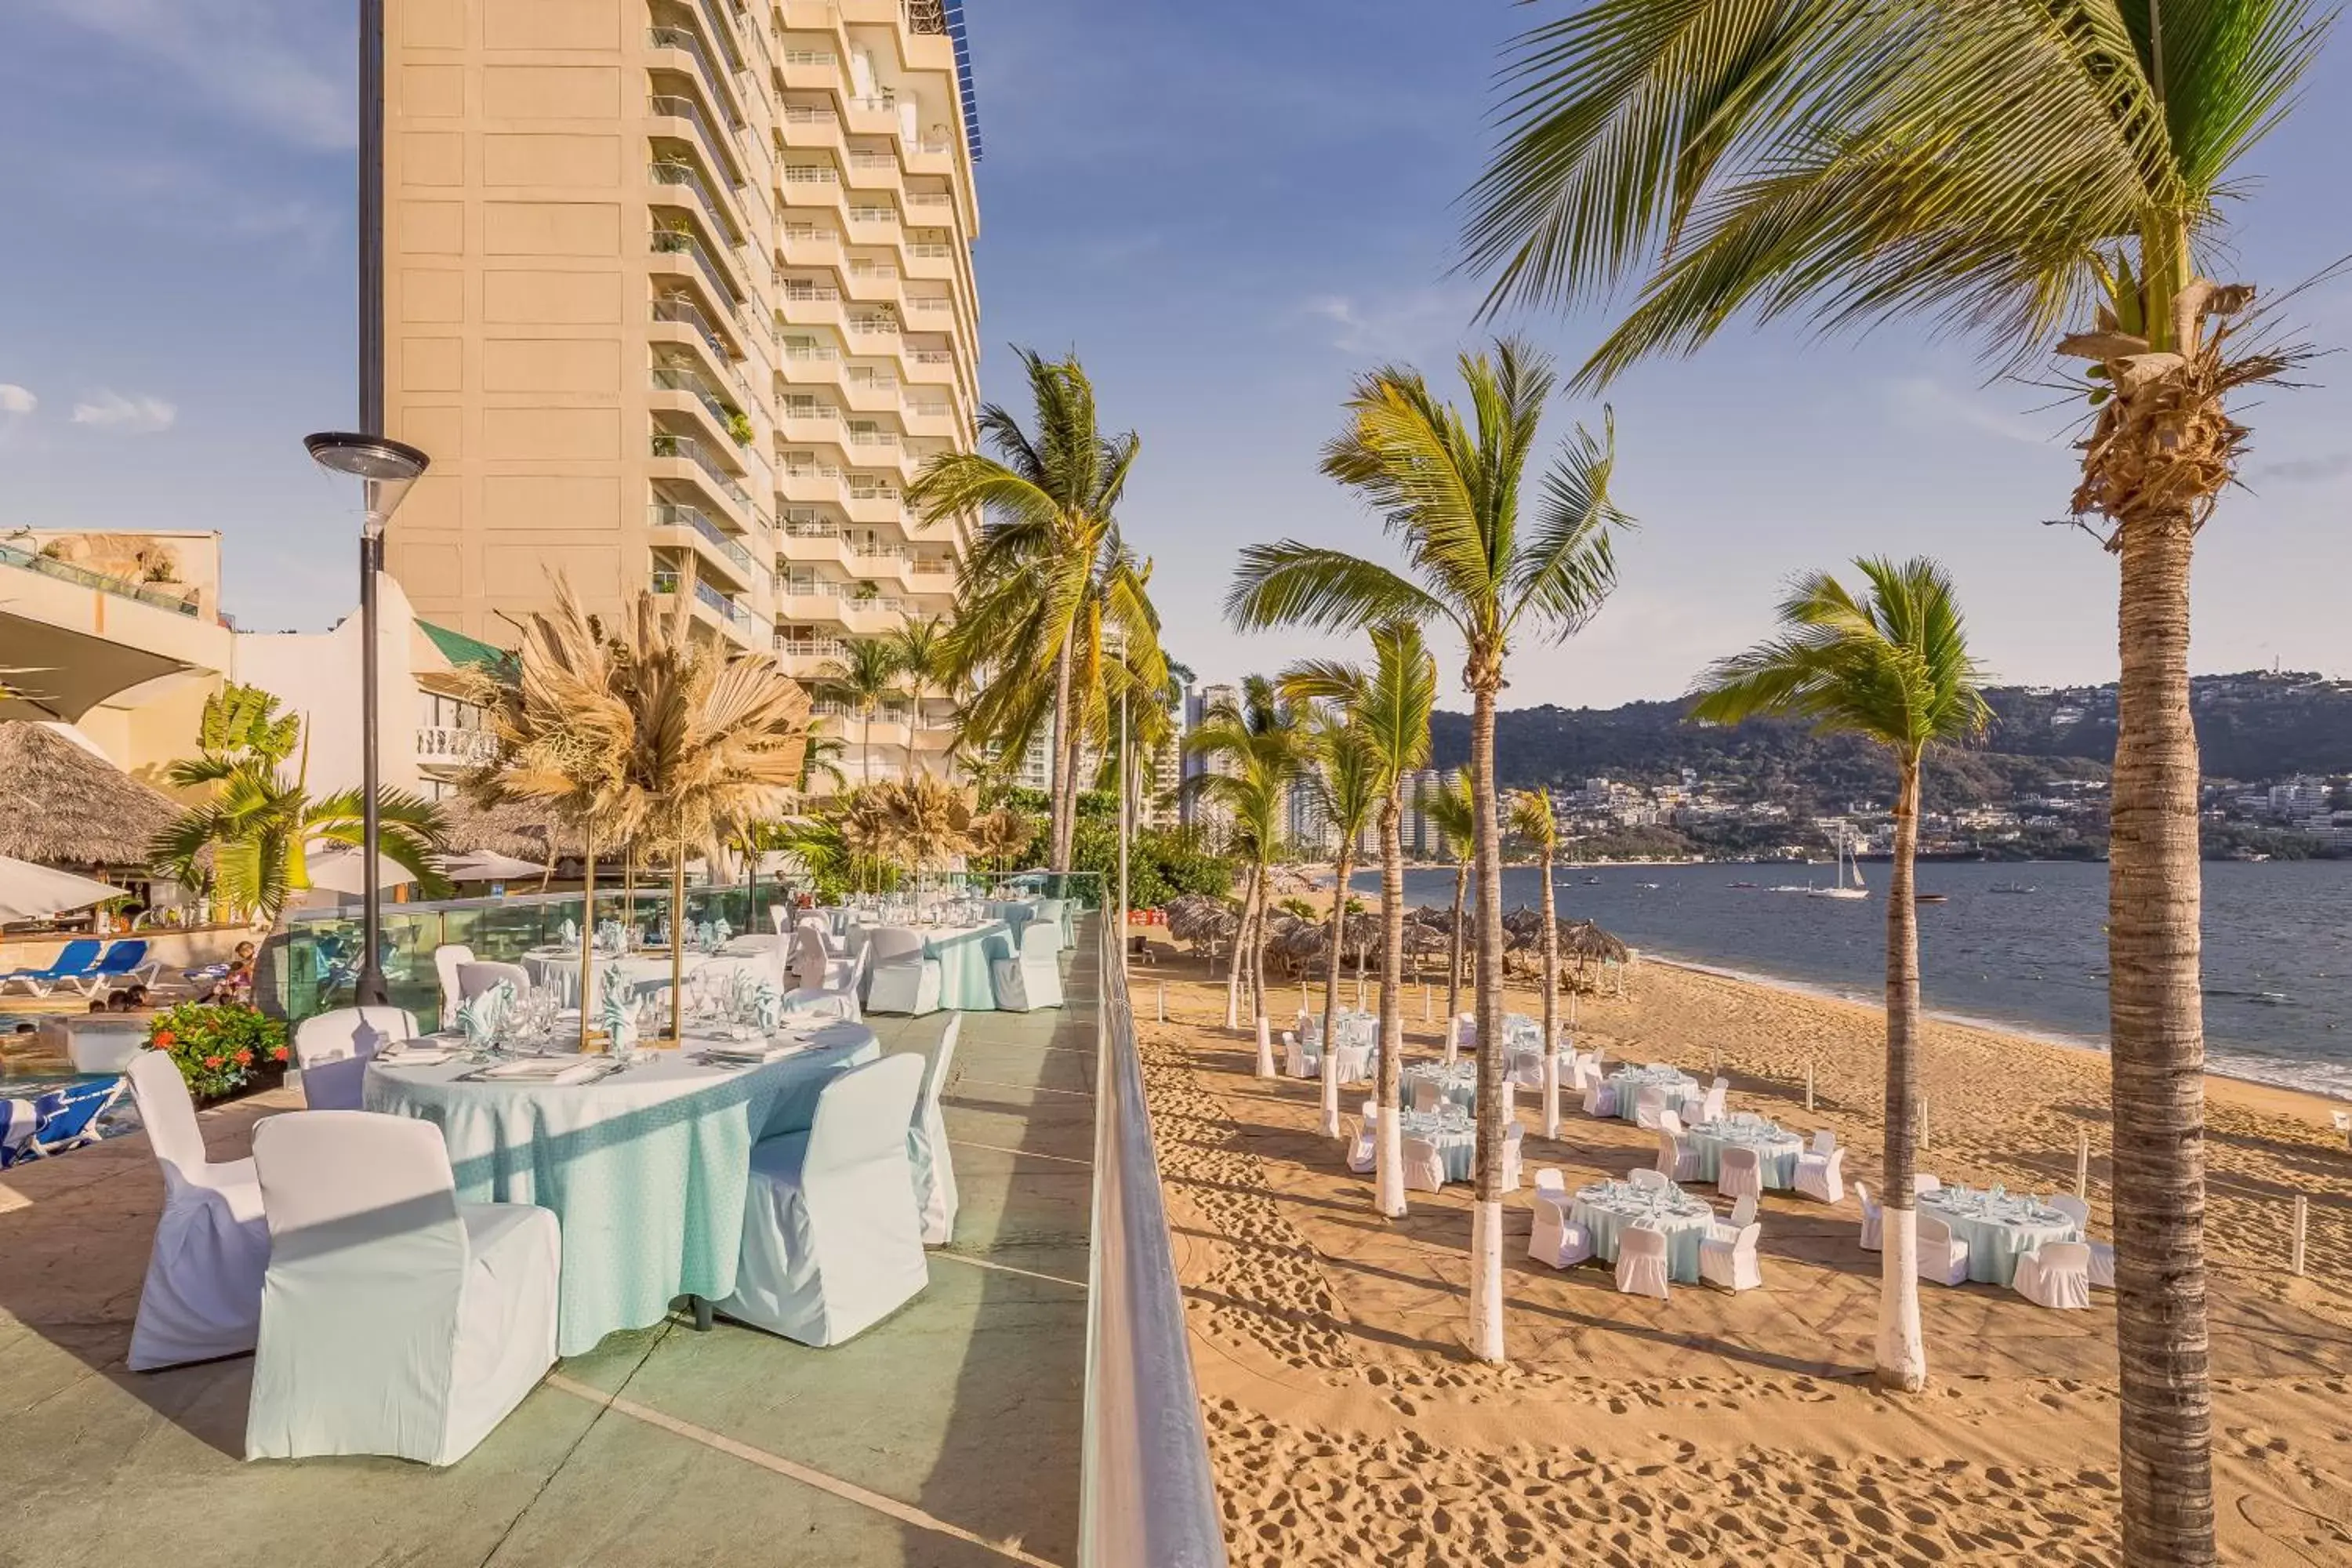 Property building, Banquet Facilities in Gamma Acapulco Copacabana